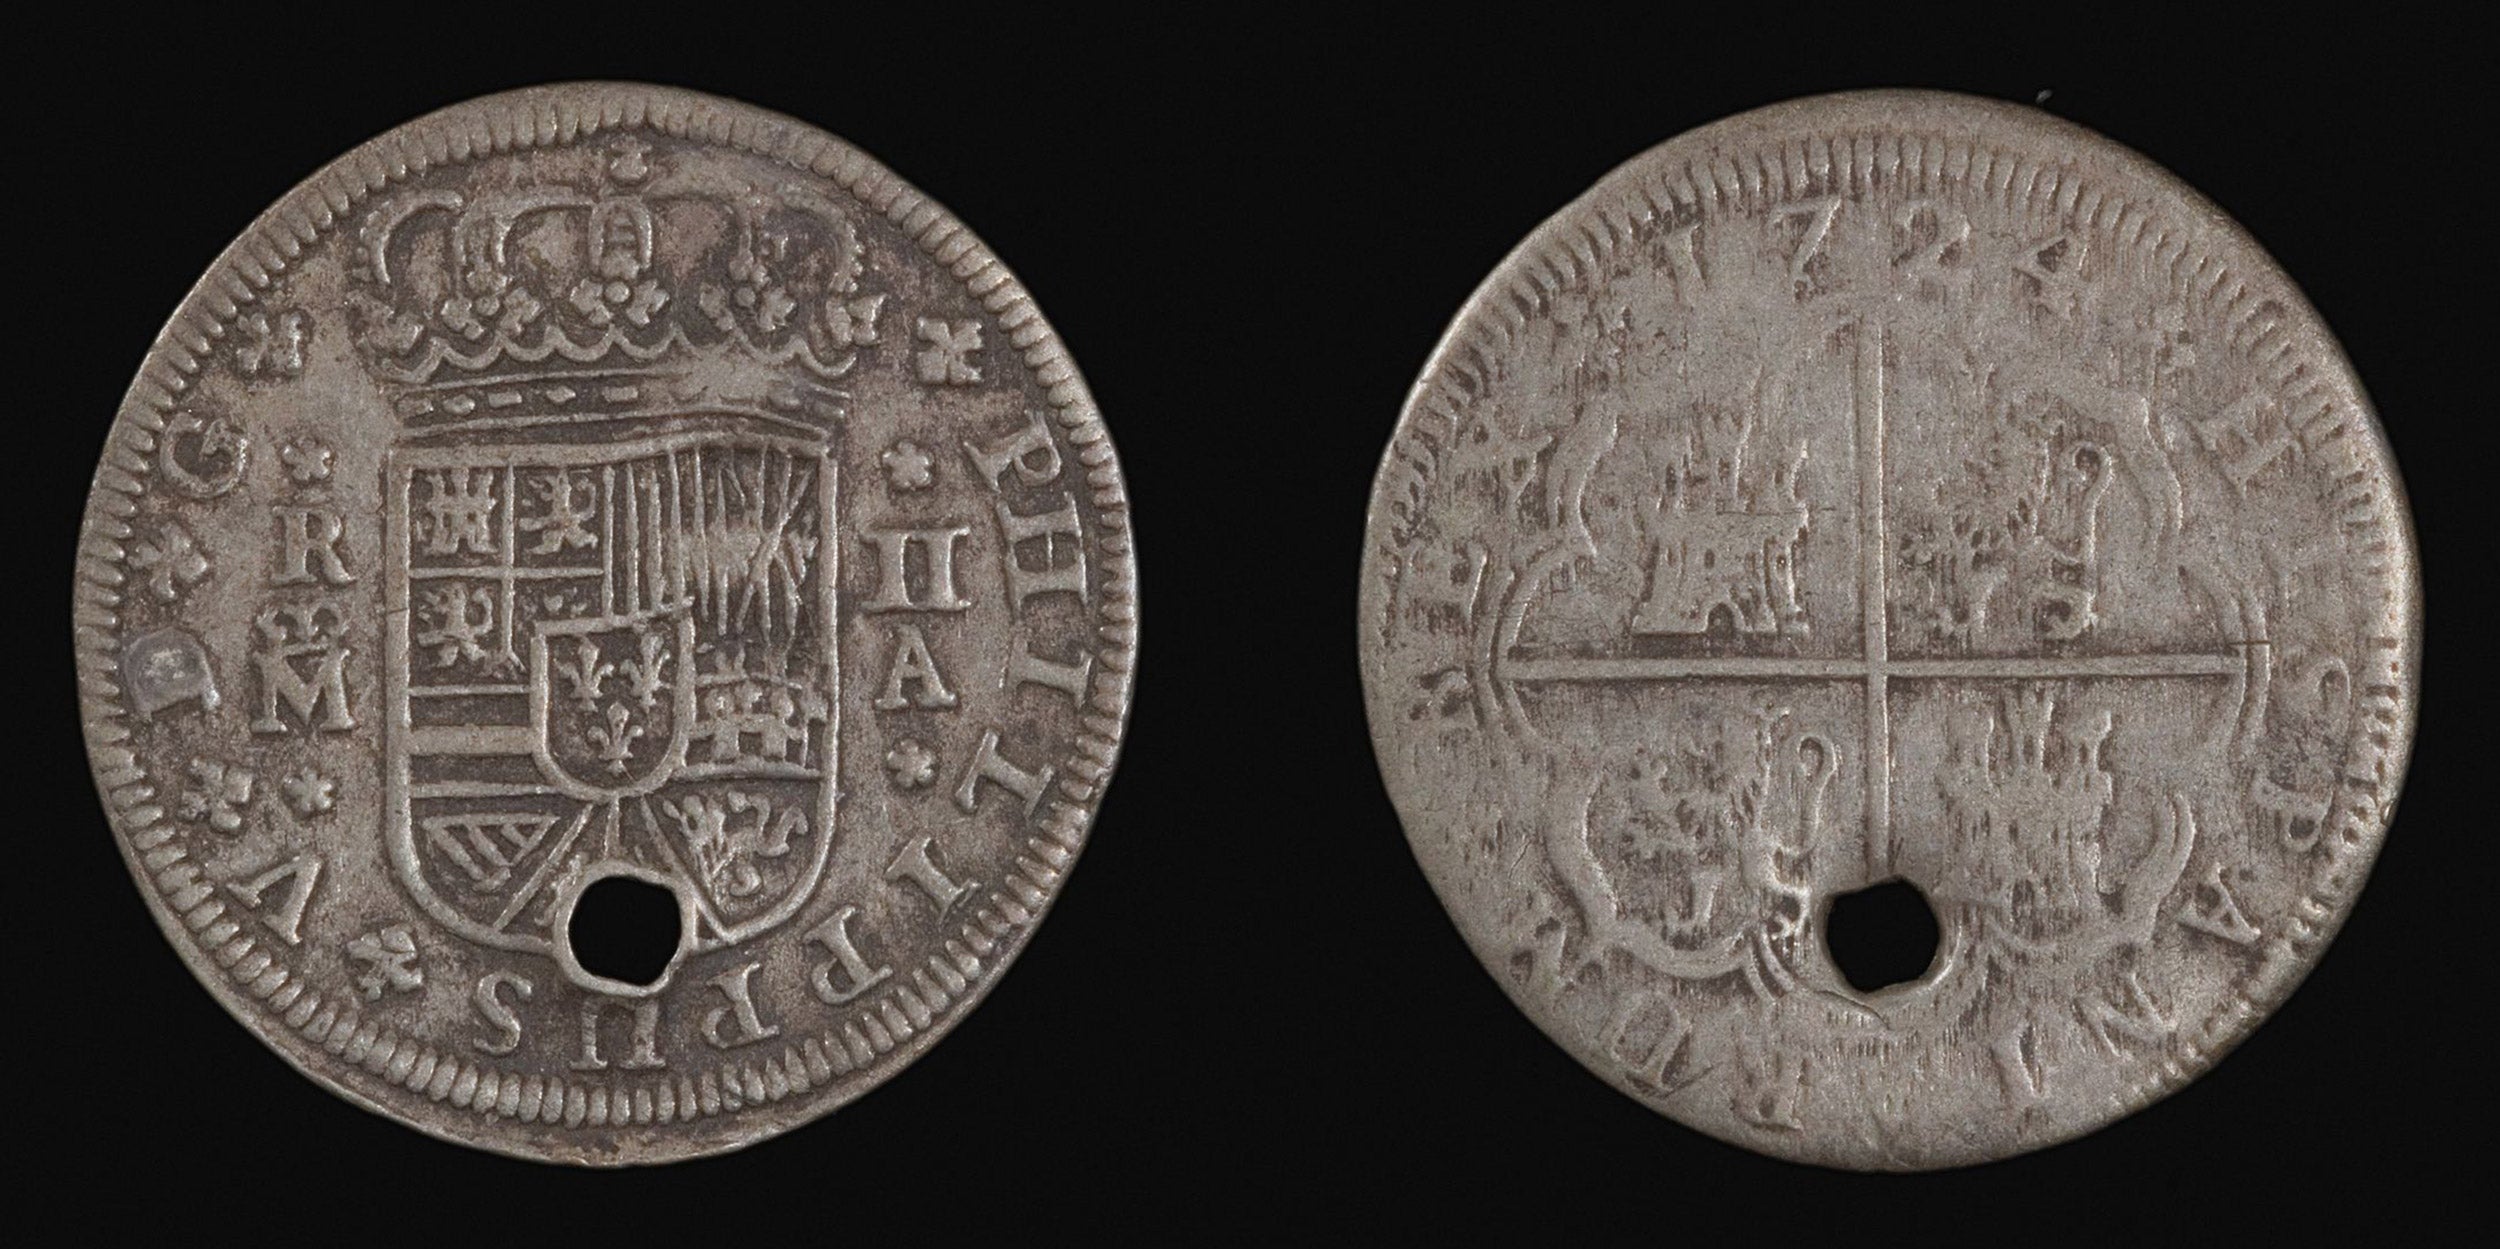 Silver coins.